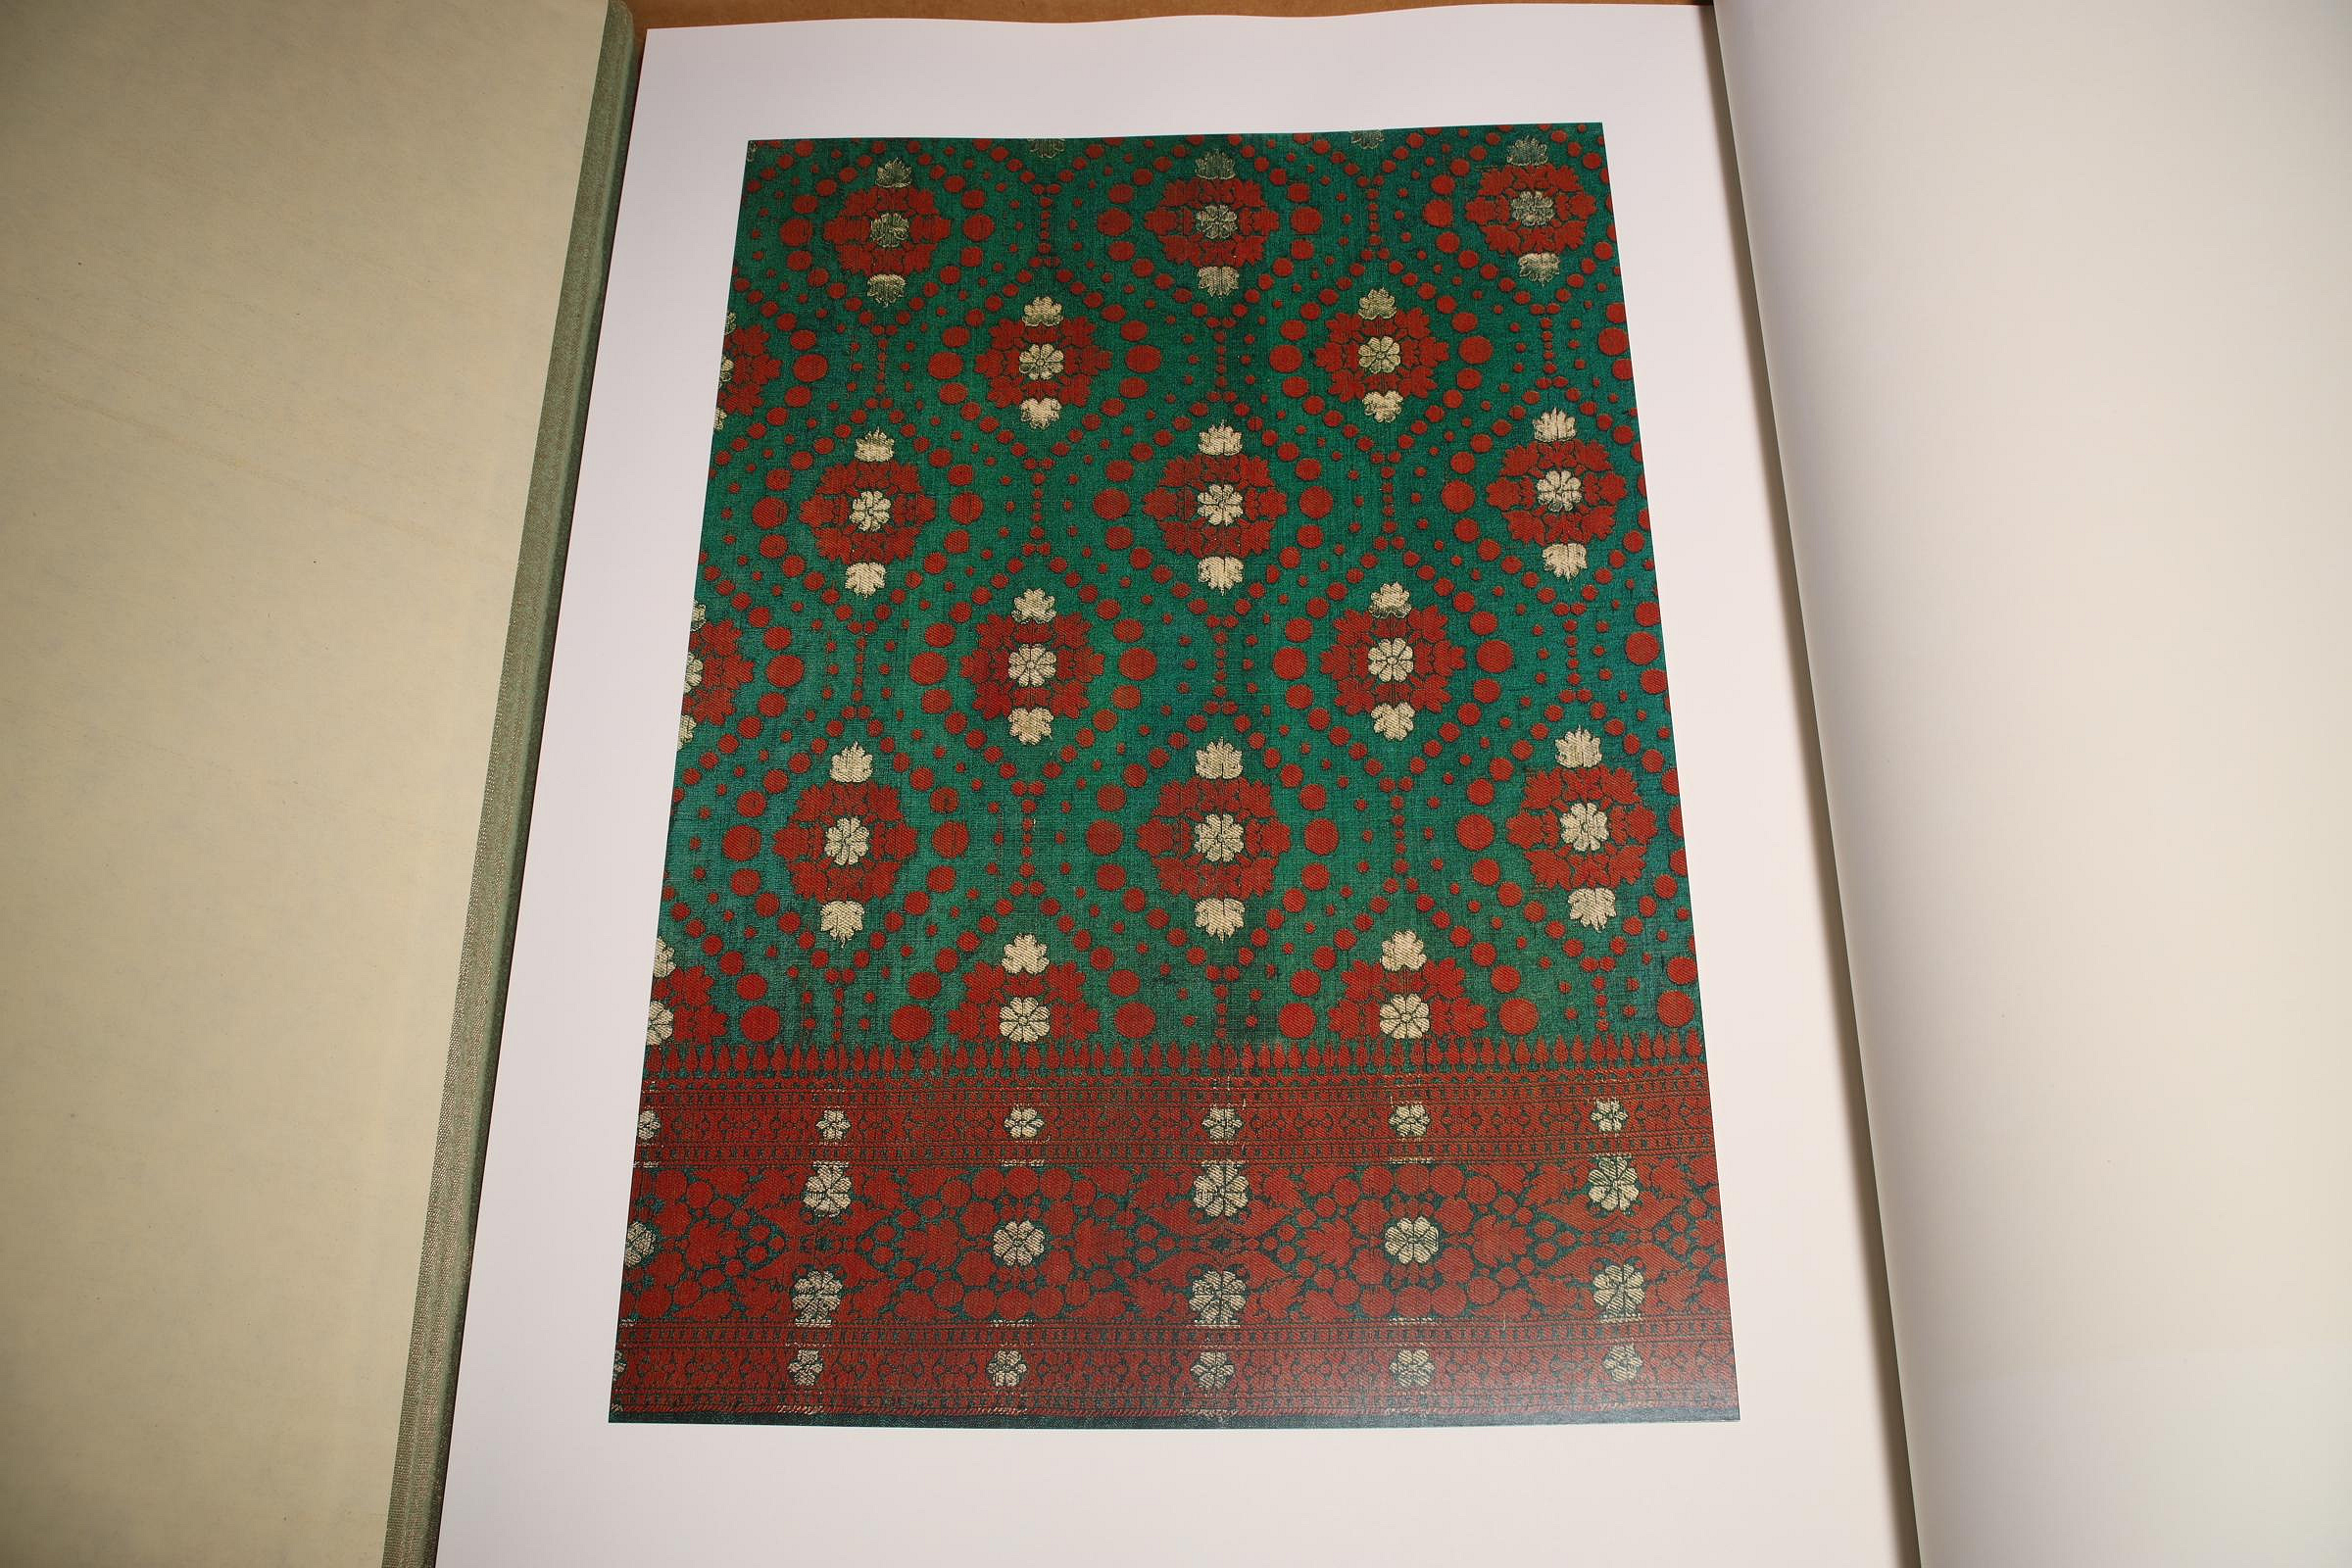 3/3結標定價兩萬日幣昭和五十年京都書院印度の織紋B020984 -精裝書古書 